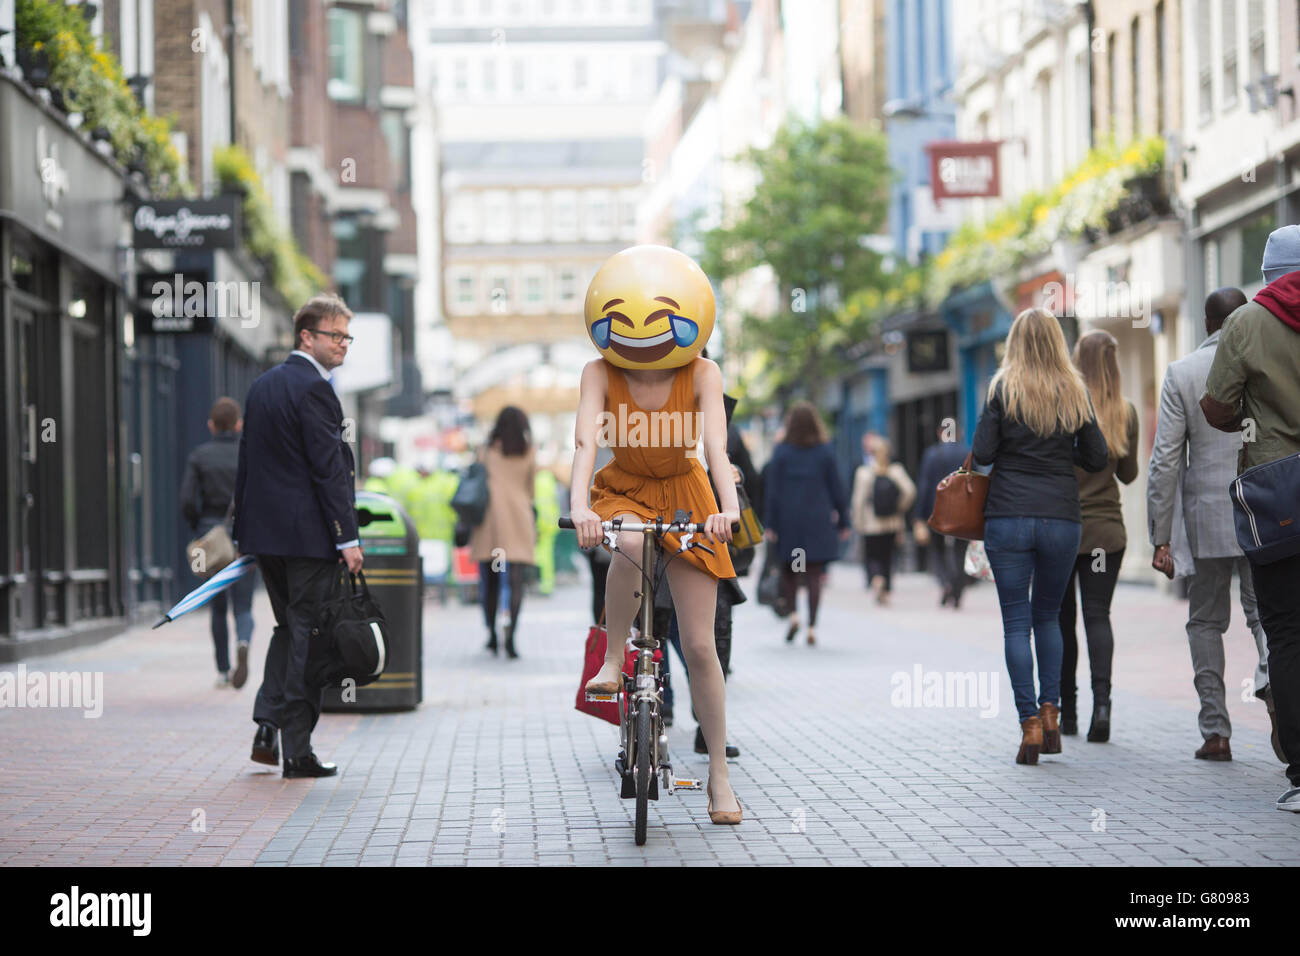 Drei Menschen, die als Emoji-Figuren gekleidet sind, reisen durch London, wie eine neue Studie von TalkTalk Mobile anlässlich der Einführung der preisgünstigsten unbegrenzten mobilen SIM-Karte Großbritanniens zeigt, dass Emoji schneller angenommen wird als jede andere Sprache in der Geschichte, 8 von 10 Briten nutzen nun die bunten Symbole, um zu kommunizieren. Stockfoto